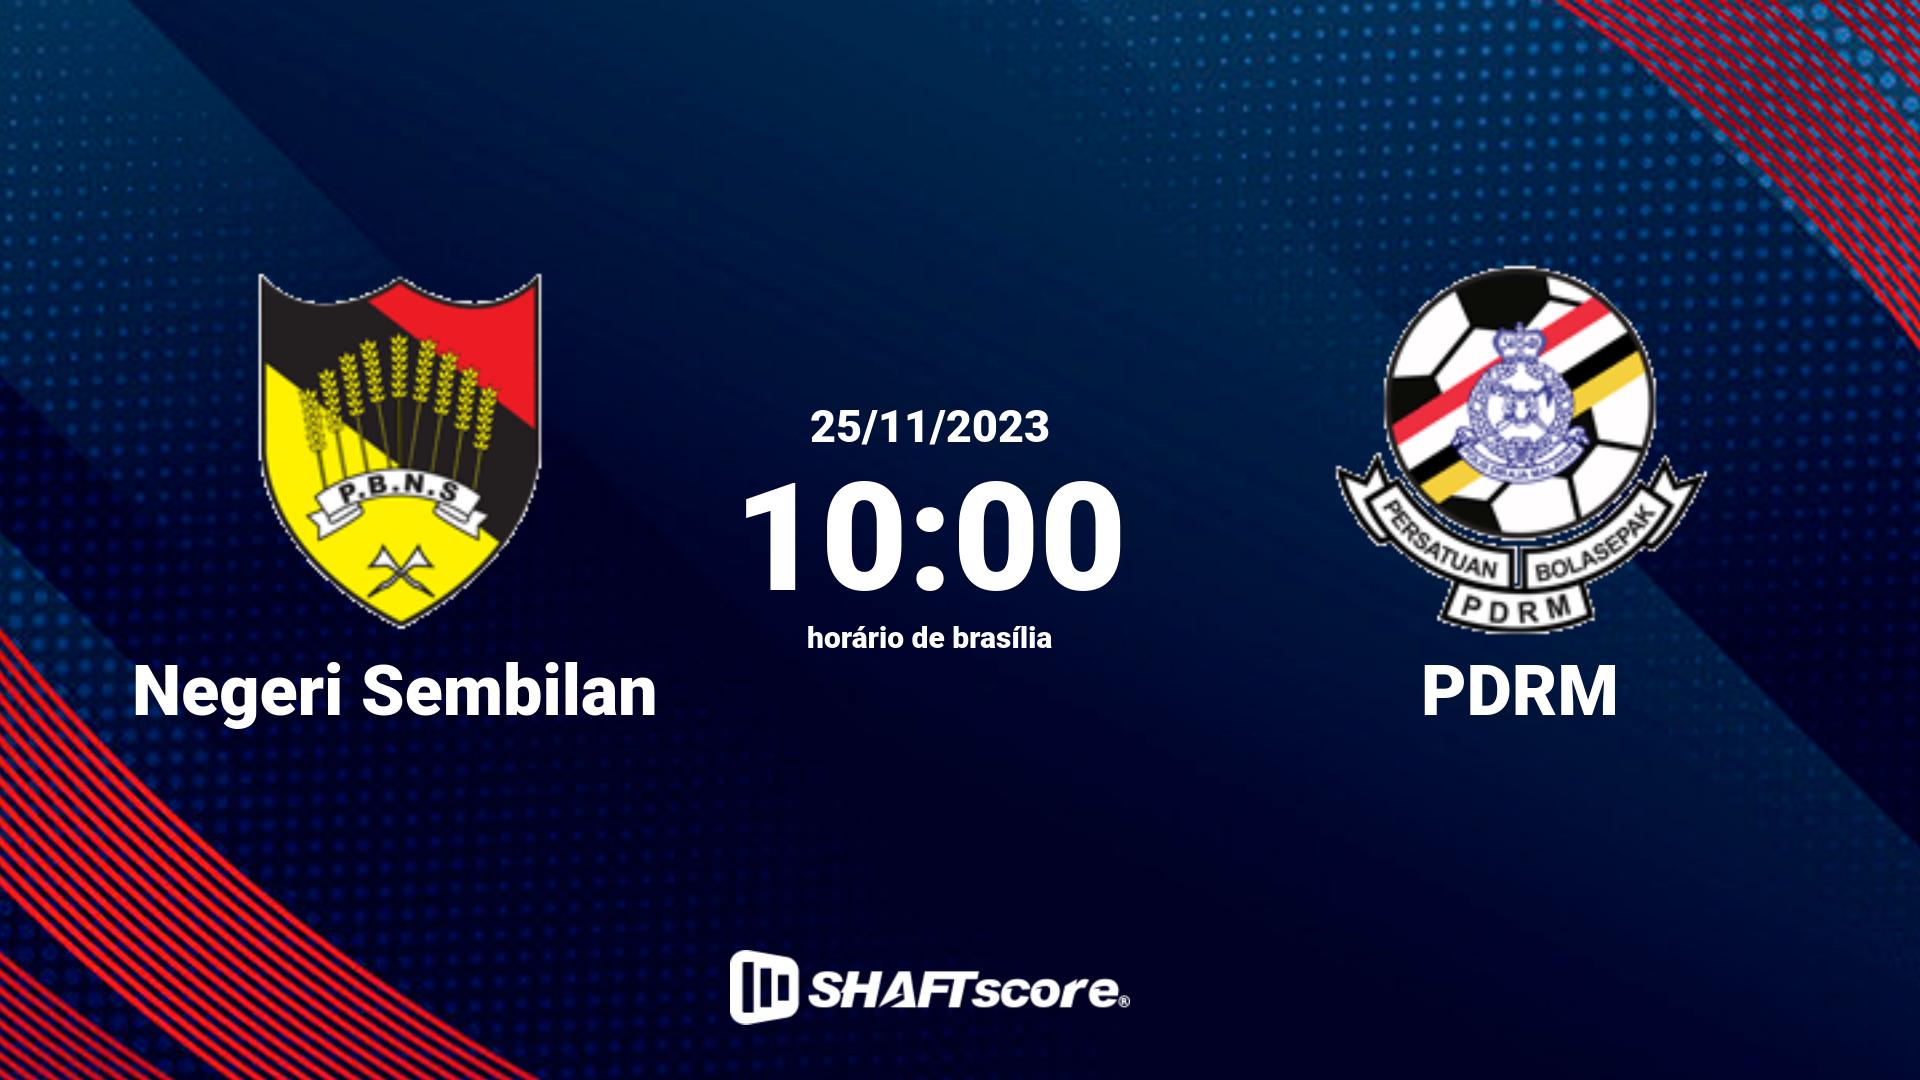 Estatísticas do jogo Negeri Sembilan vs PDRM 25.11 10:00